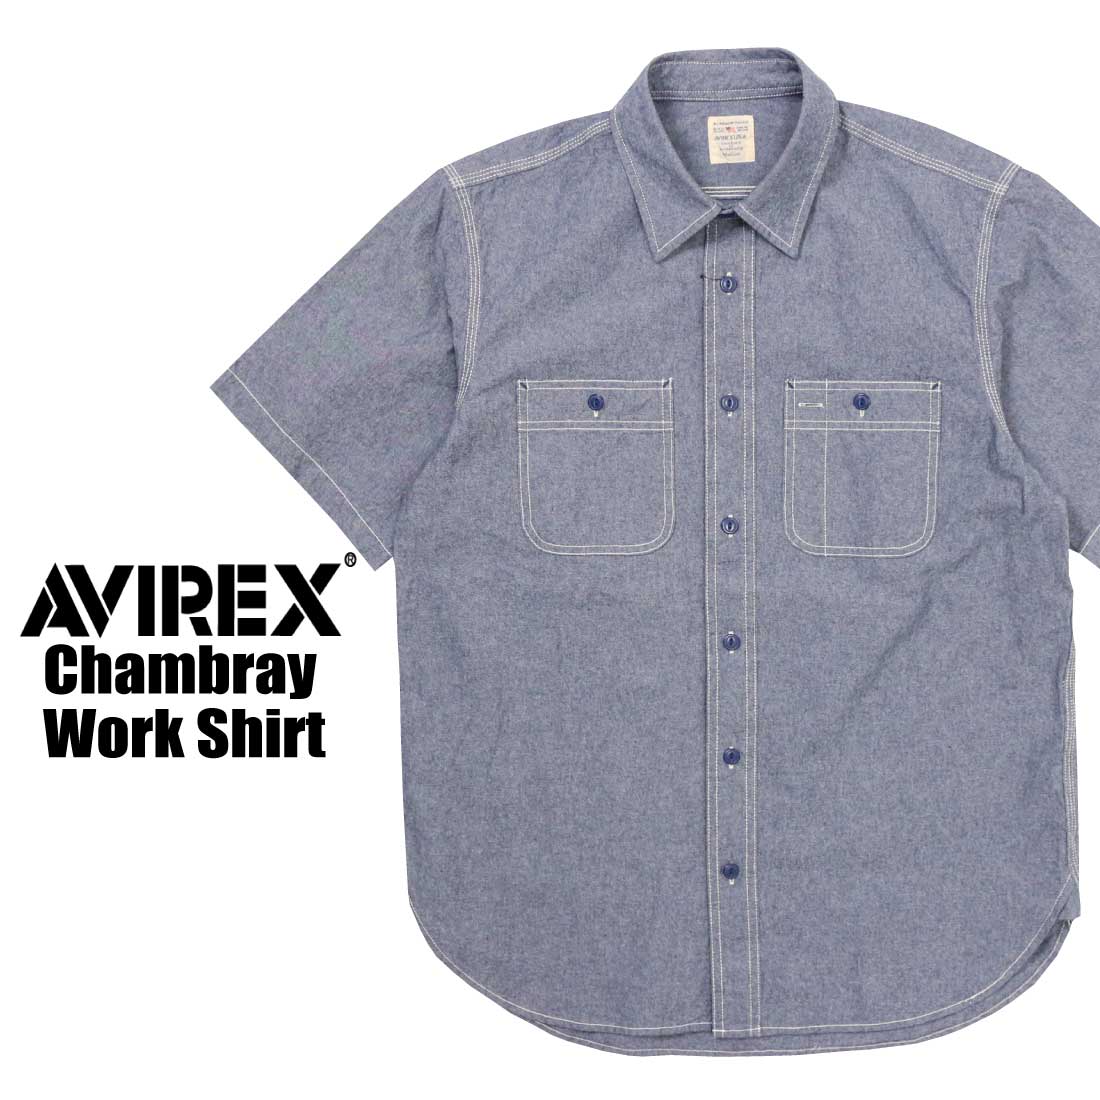 AVIREX 半袖 783-3923003 シャンブレー ワークシャツ 胸ポケット ペンホルダー メ...